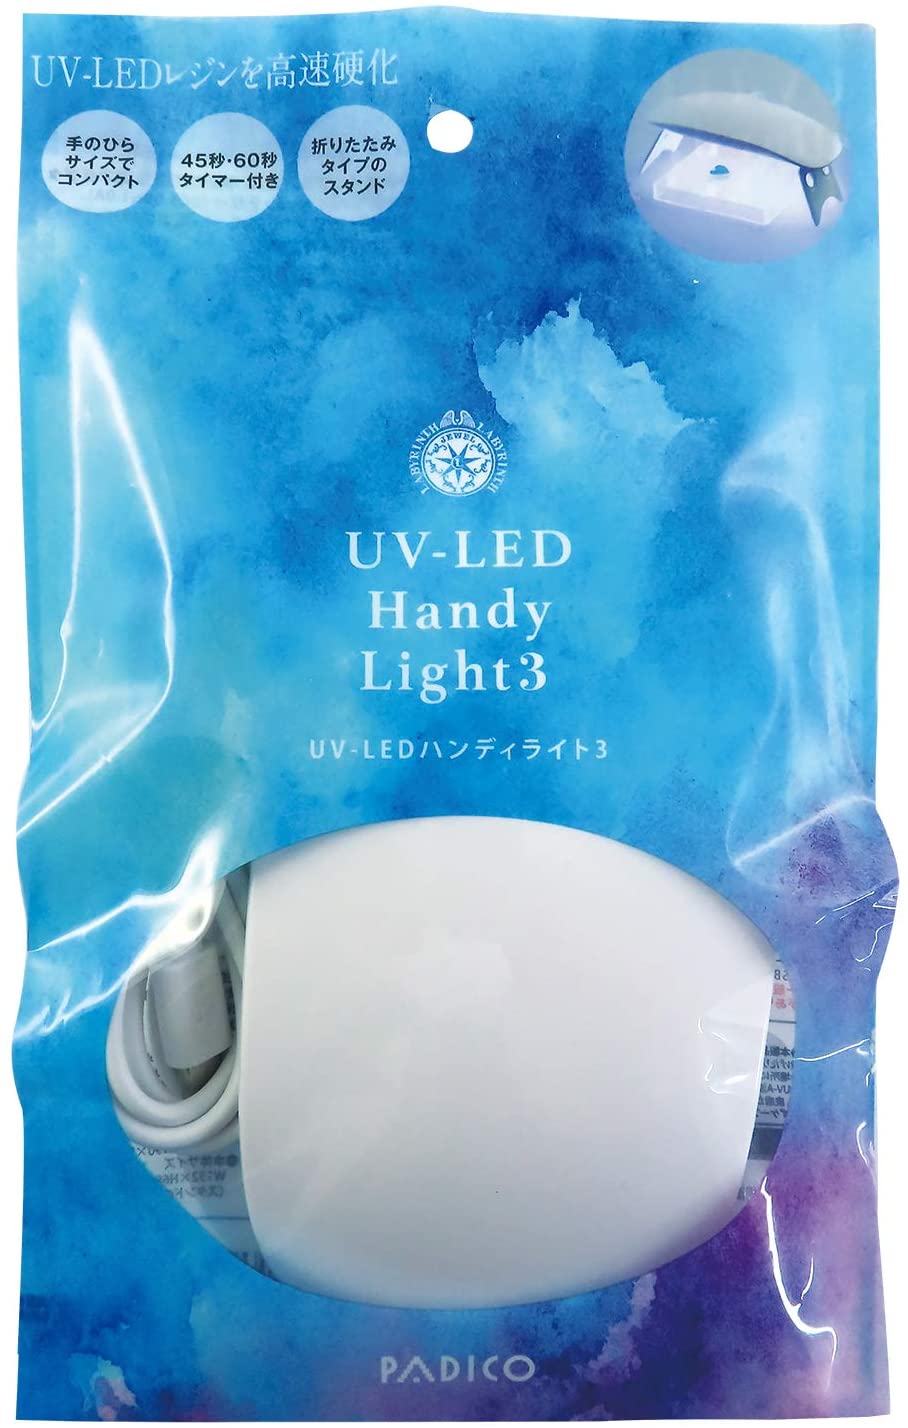 UV-LEDハンディライト3 パッケージ